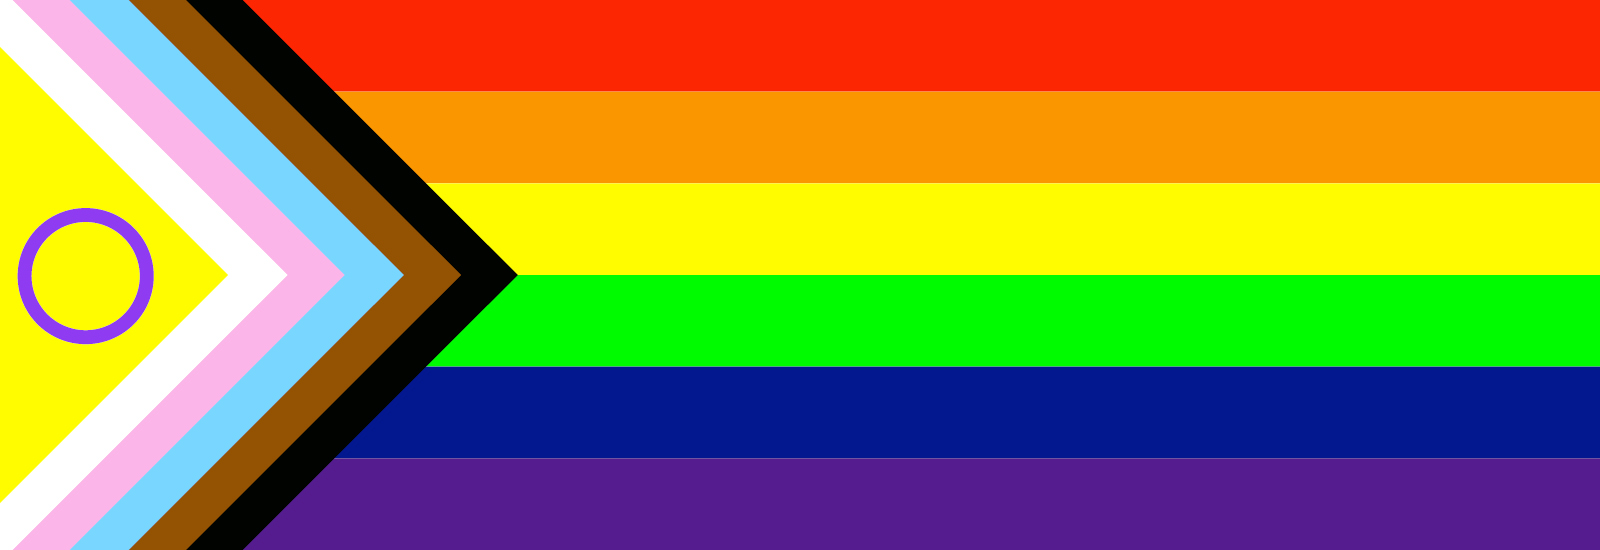 A rainbow flag graphic